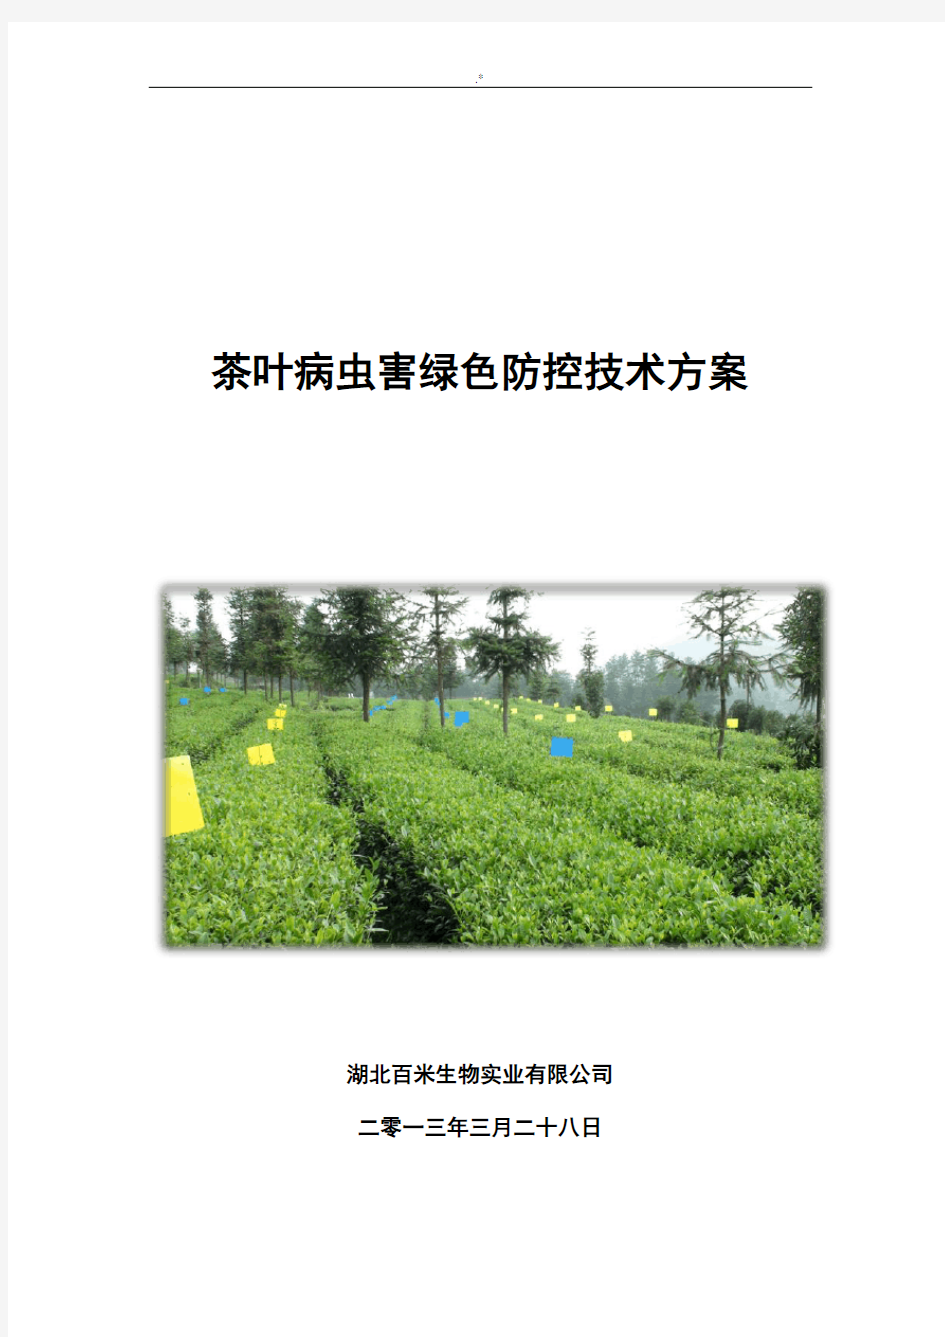 茶叶病虫害绿色防控技术材料文件